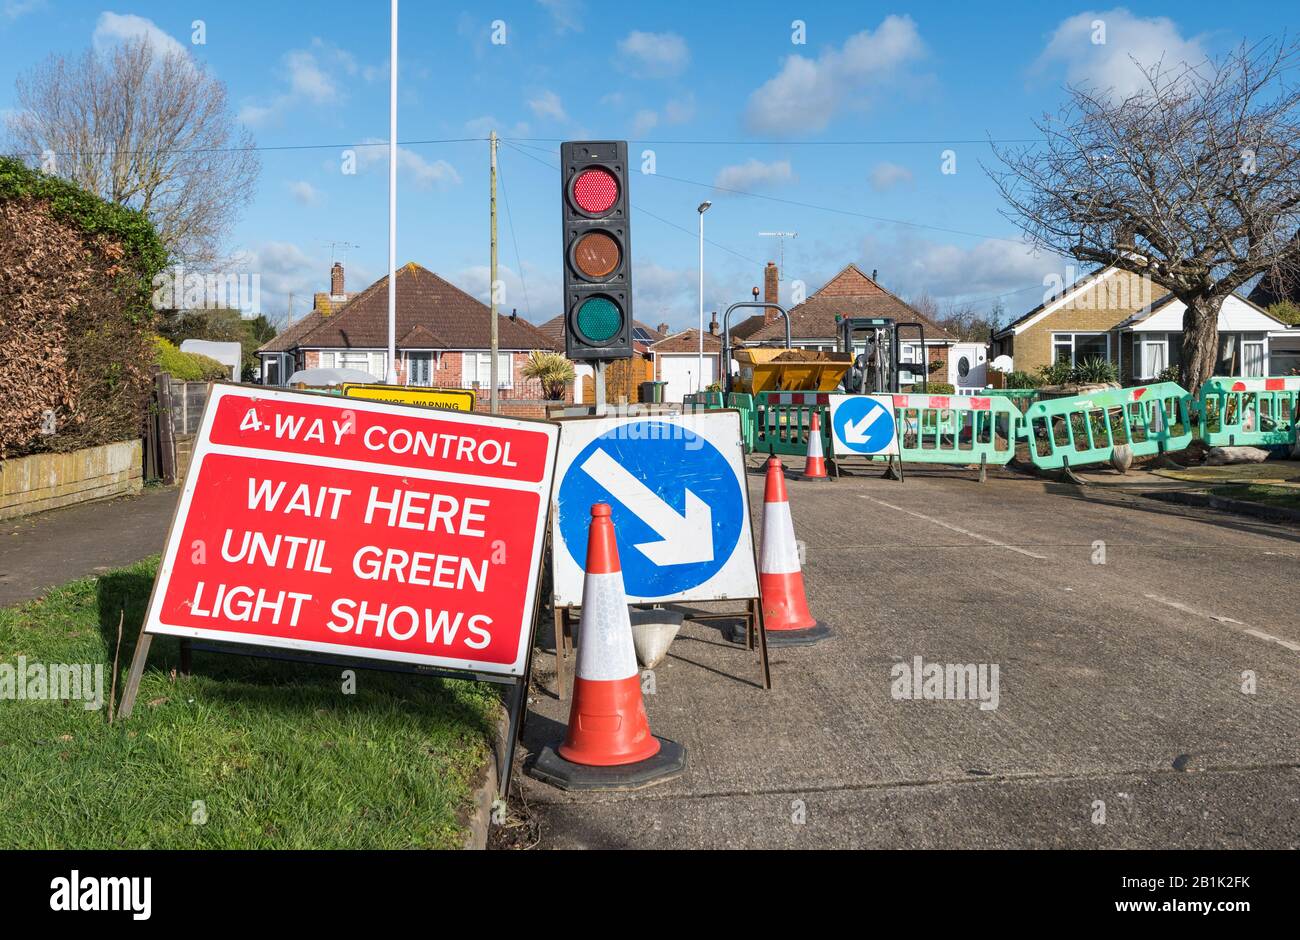 « attendez ici jusqu'à ce que le feu vert indique » un panneau d'avertissement à une jonction temporaire à 4 voies sur les routes, avec feux de circulation temporaires en Angleterre, au Royaume-Uni. Banque D'Images